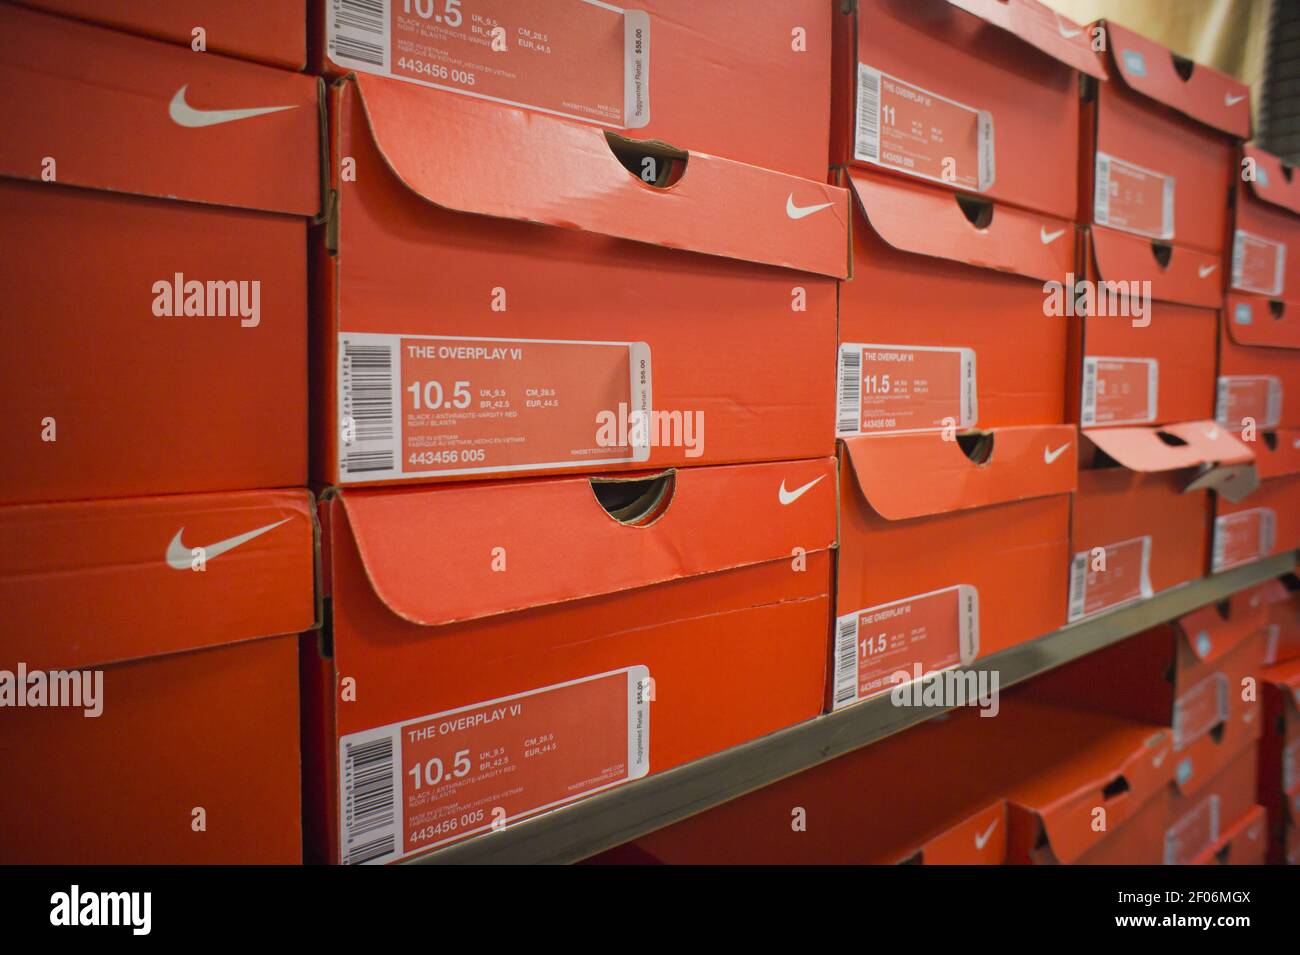 Las cajas de calzado se ven en una tienda de artículos deportivos en Nueva York el lunes, 10 de octubre de 2011. Nike informó de los beneficios del último